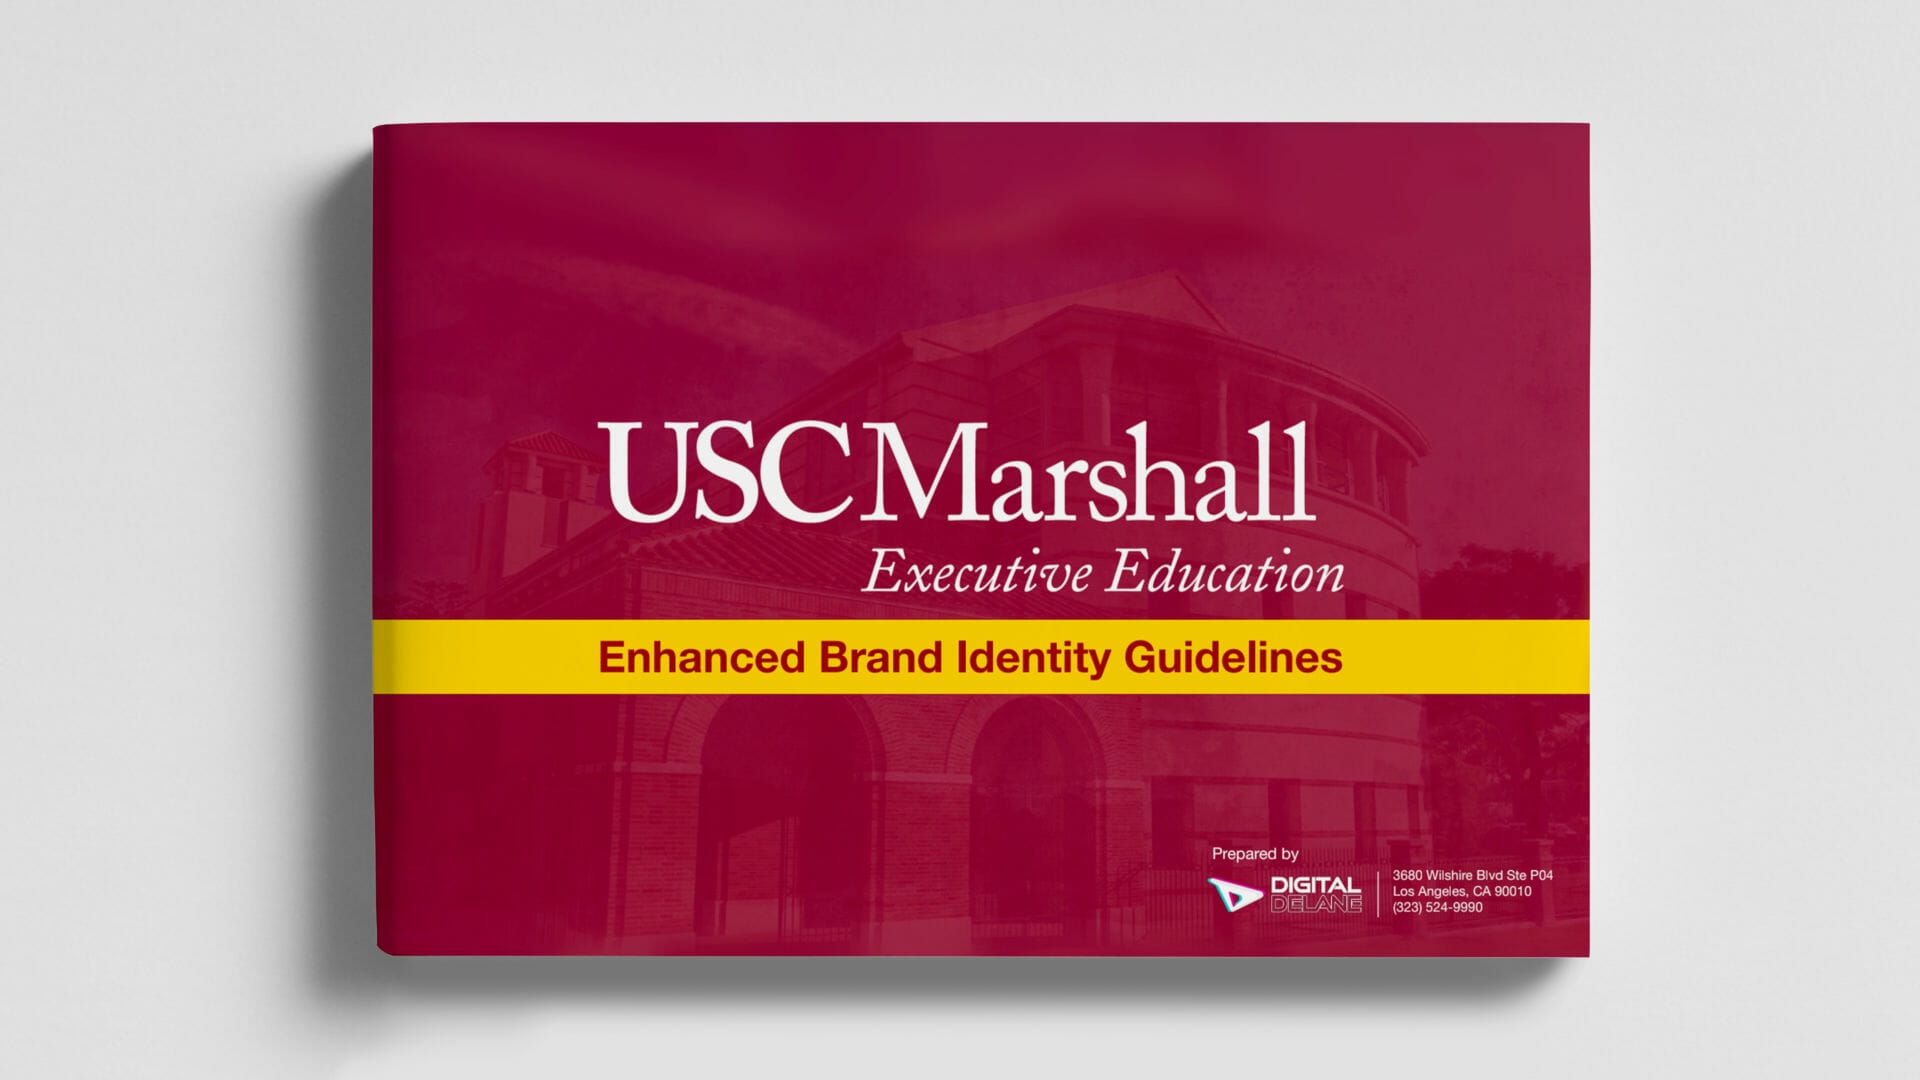 USC marshall brand identity marketing by digital delane